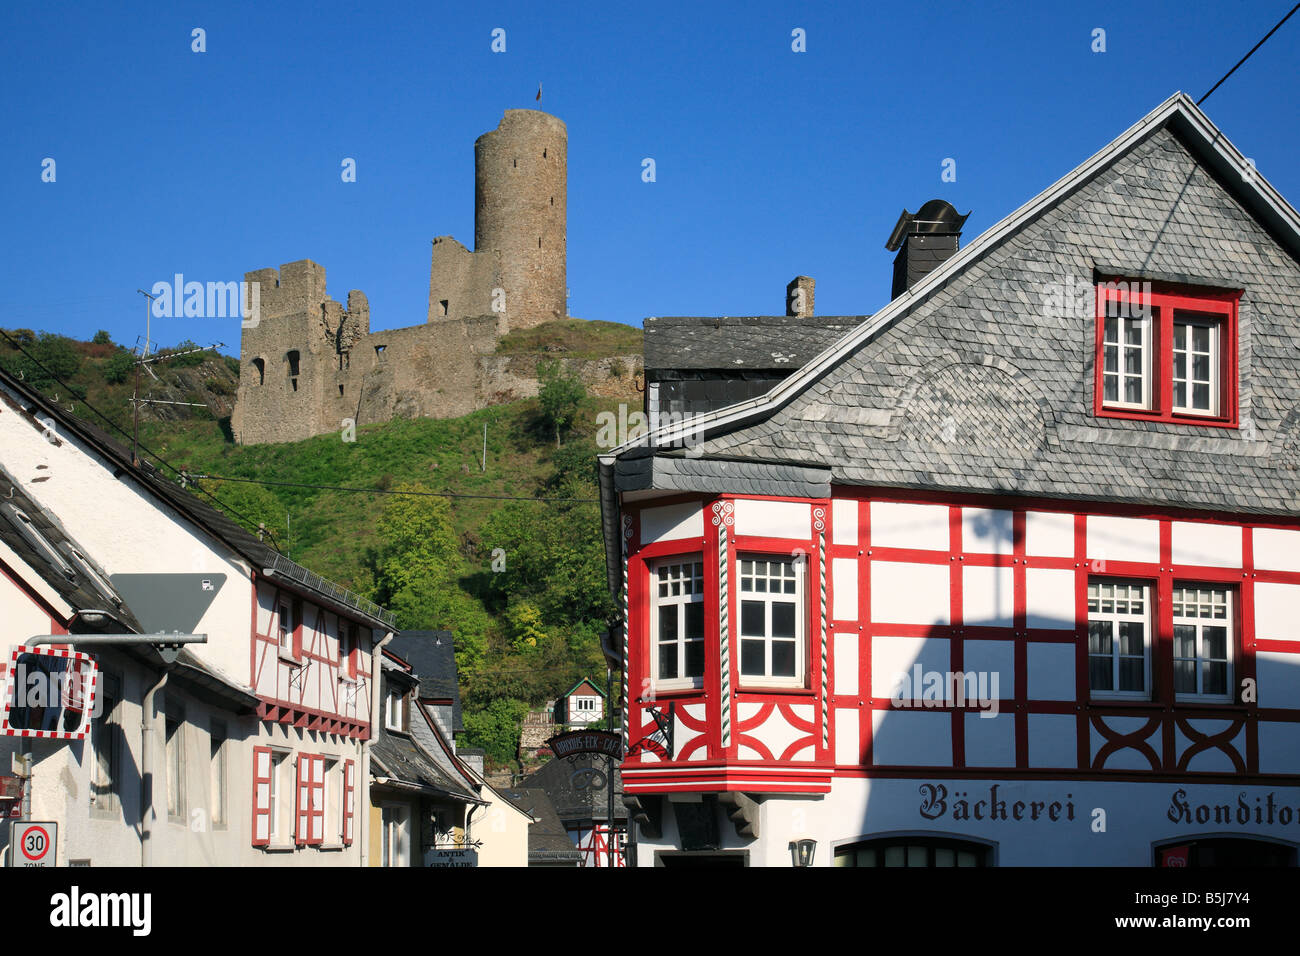 Stadtansicht mit Fachwerkhaeusern und der Loewenburg, Monreal, Elztal, Vordereifel, Rheinland-Pfalz Stock Photo